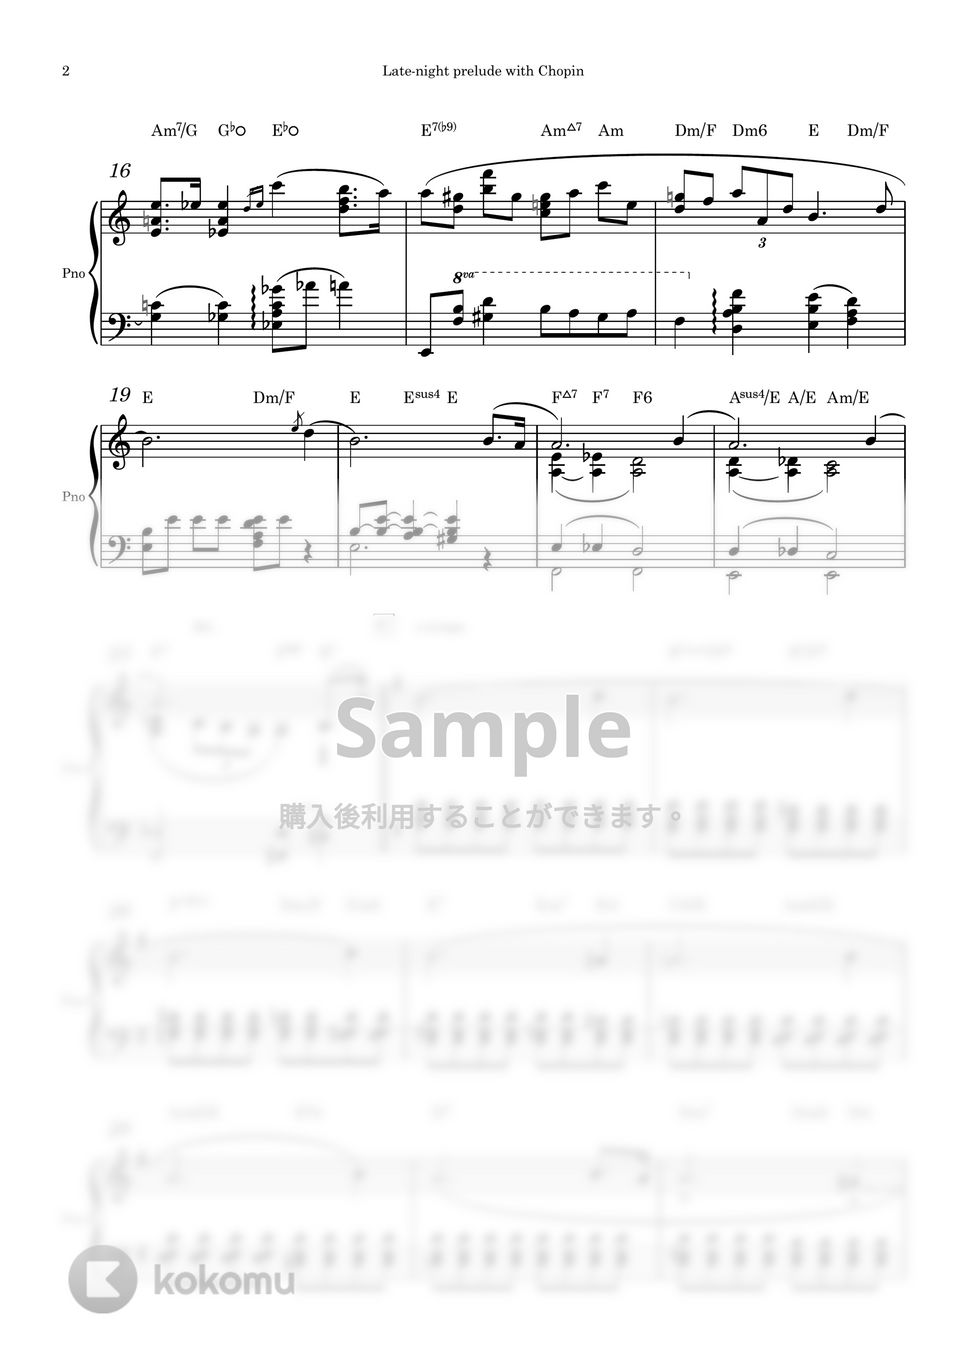 ショパン - プレリュード N0.4 (ピアノソロ) by Piano QQQ